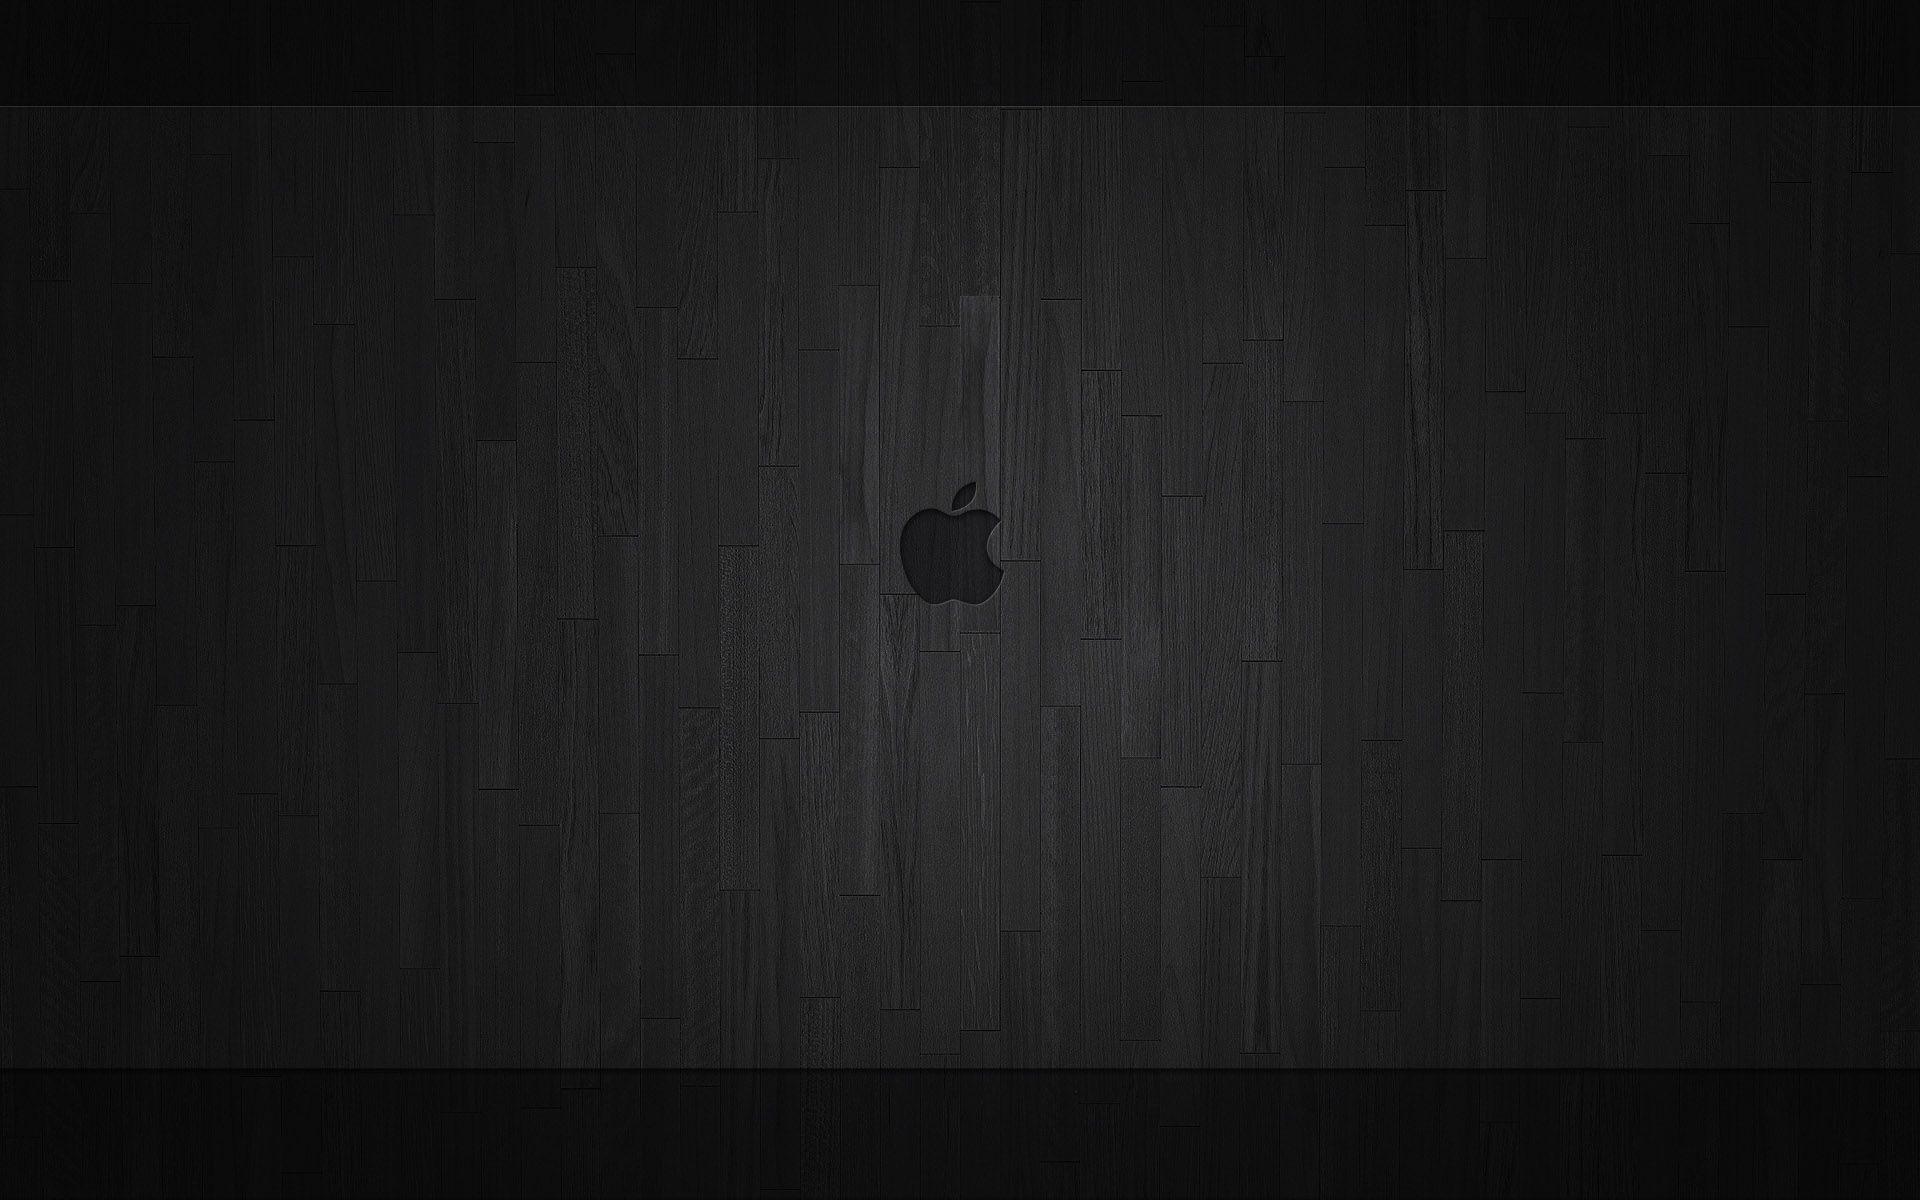 Apple MacBook Pro Wallpaper 4K Dark Mode Stock 2021 6762